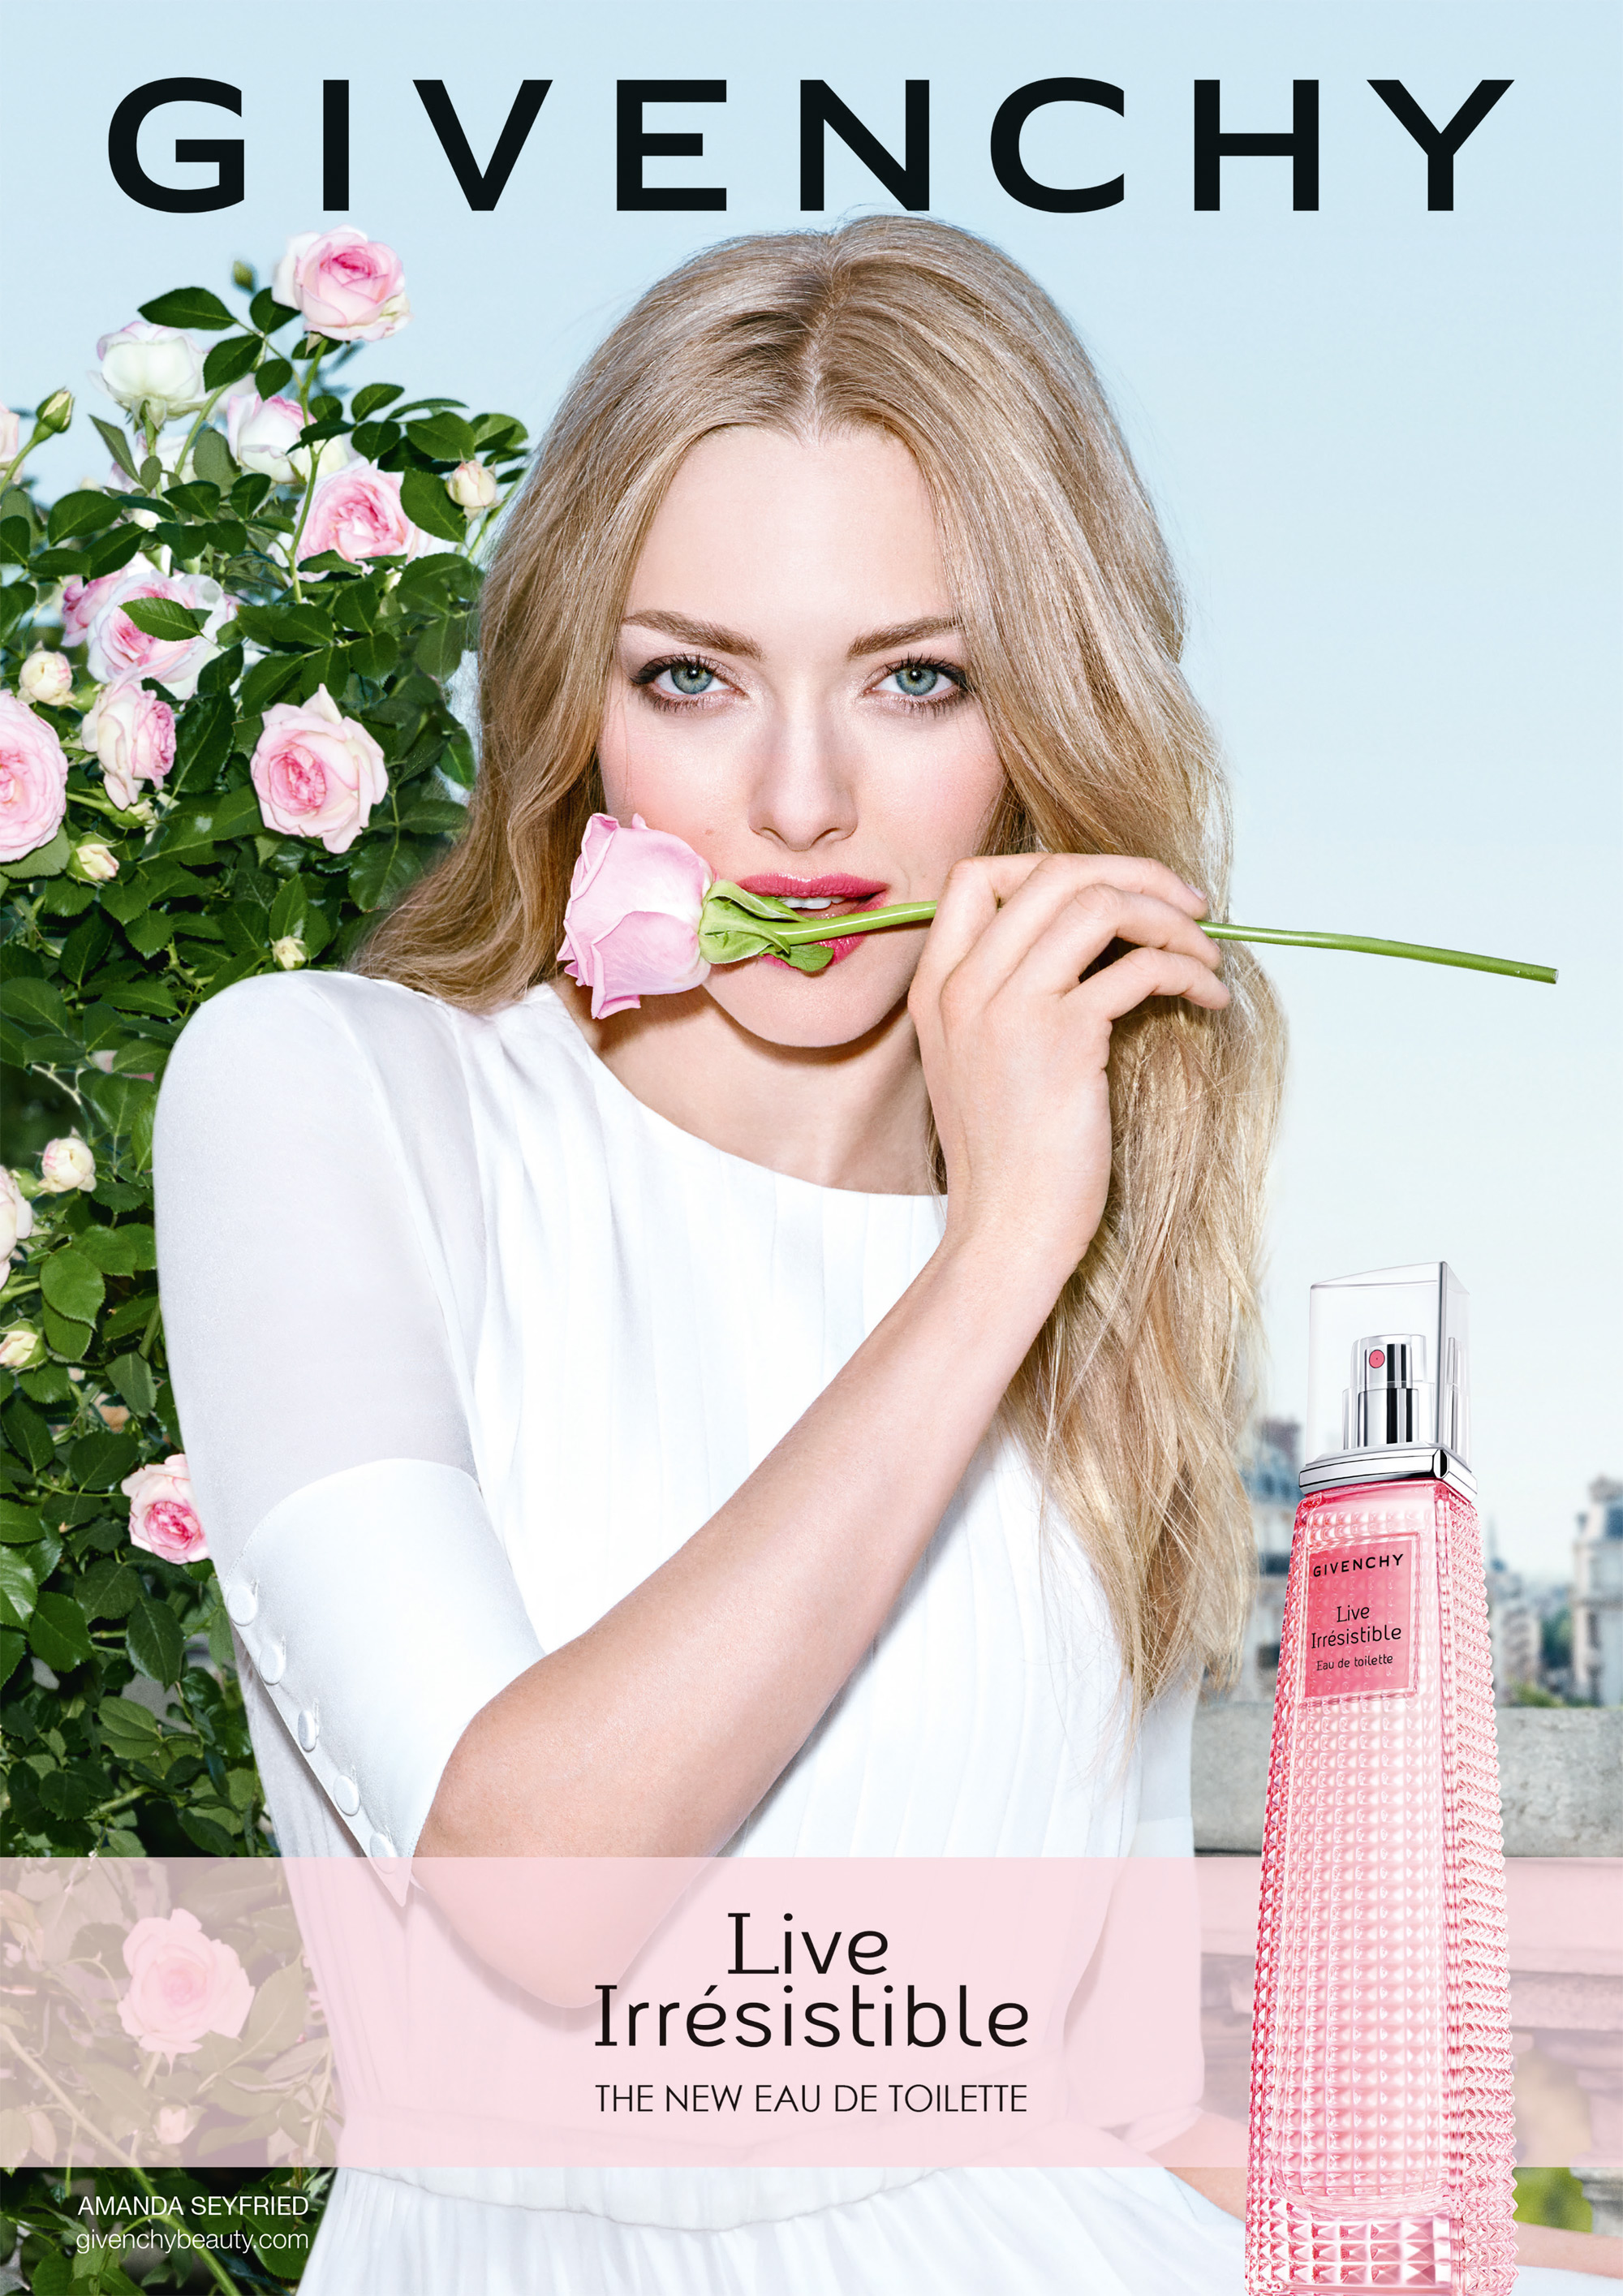 Live Irresistible Eau de Toilette Givenchy parfum - un nouveau parfum